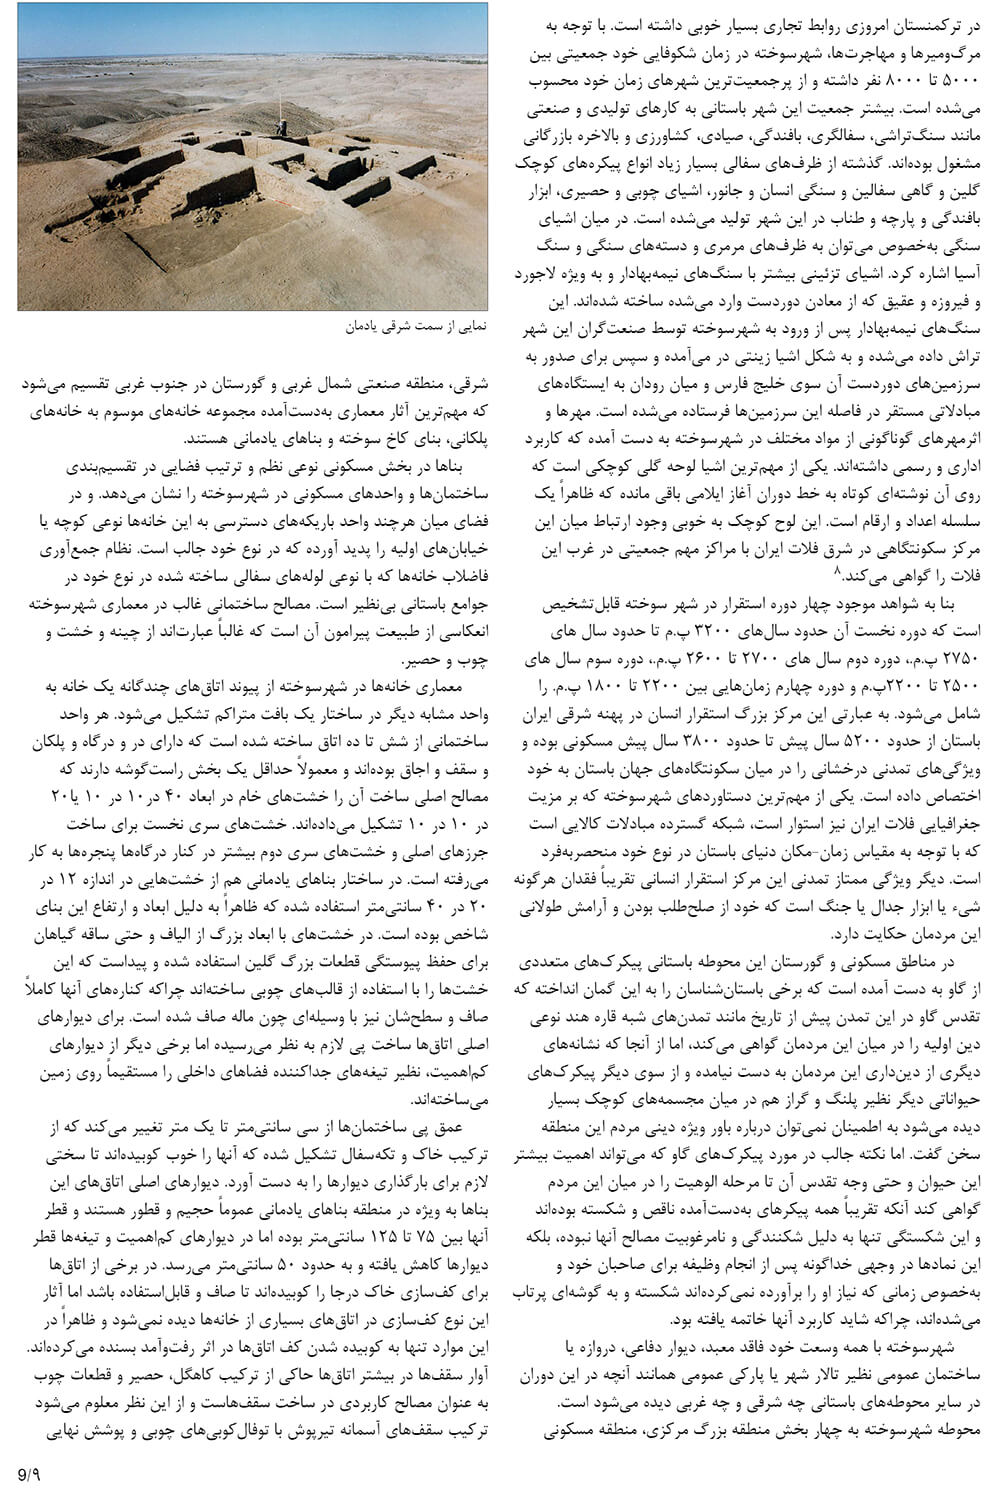 picture no. 3 of publication: shahr e sohkhteh, author: Kambiz Moshtaq